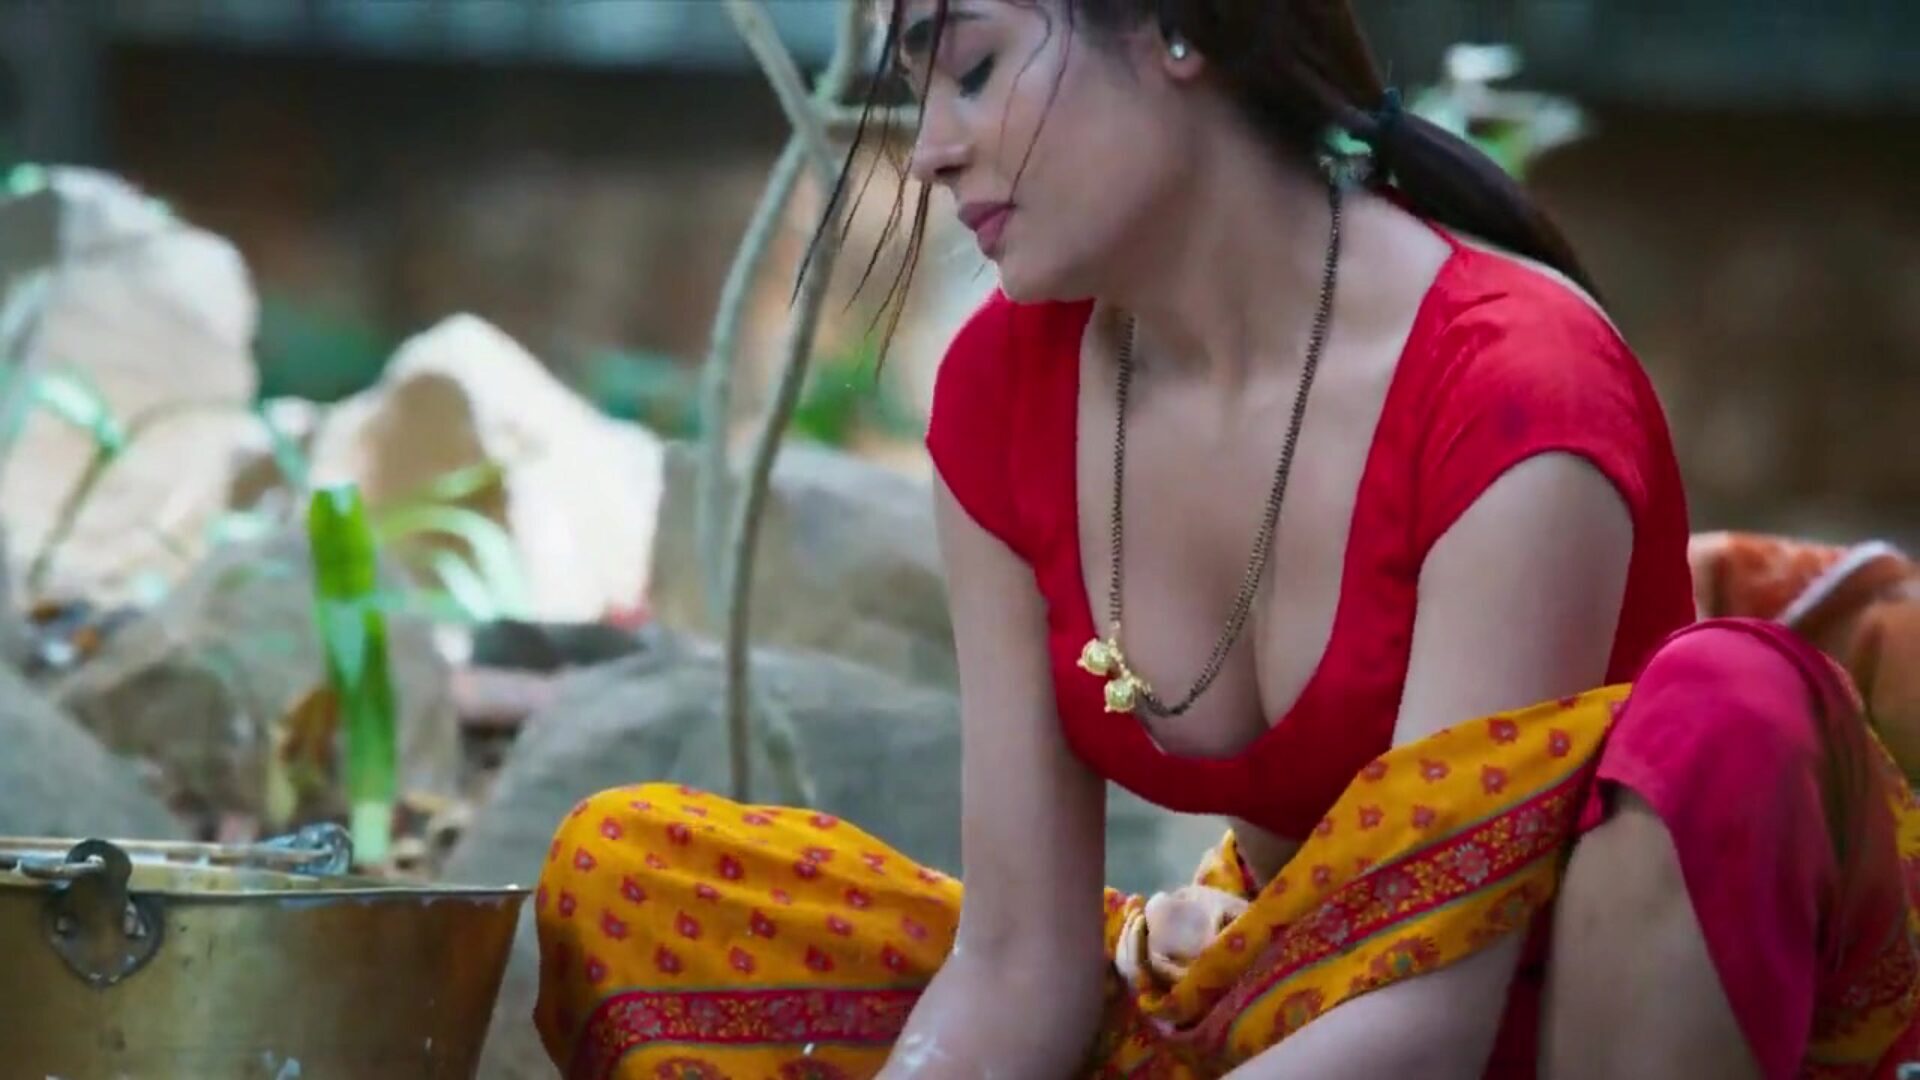 dhoban aur sarpanch disfruta del sexo apasionado satisfecho de la actriz india sikha sinha como sonu dhoban haciendo passioante har retozar con sarpanch. sikha engañando a su esposo golu dhobi. sikha sinha relleno en varias poses de joroba sonu dhoban ka joban mastram